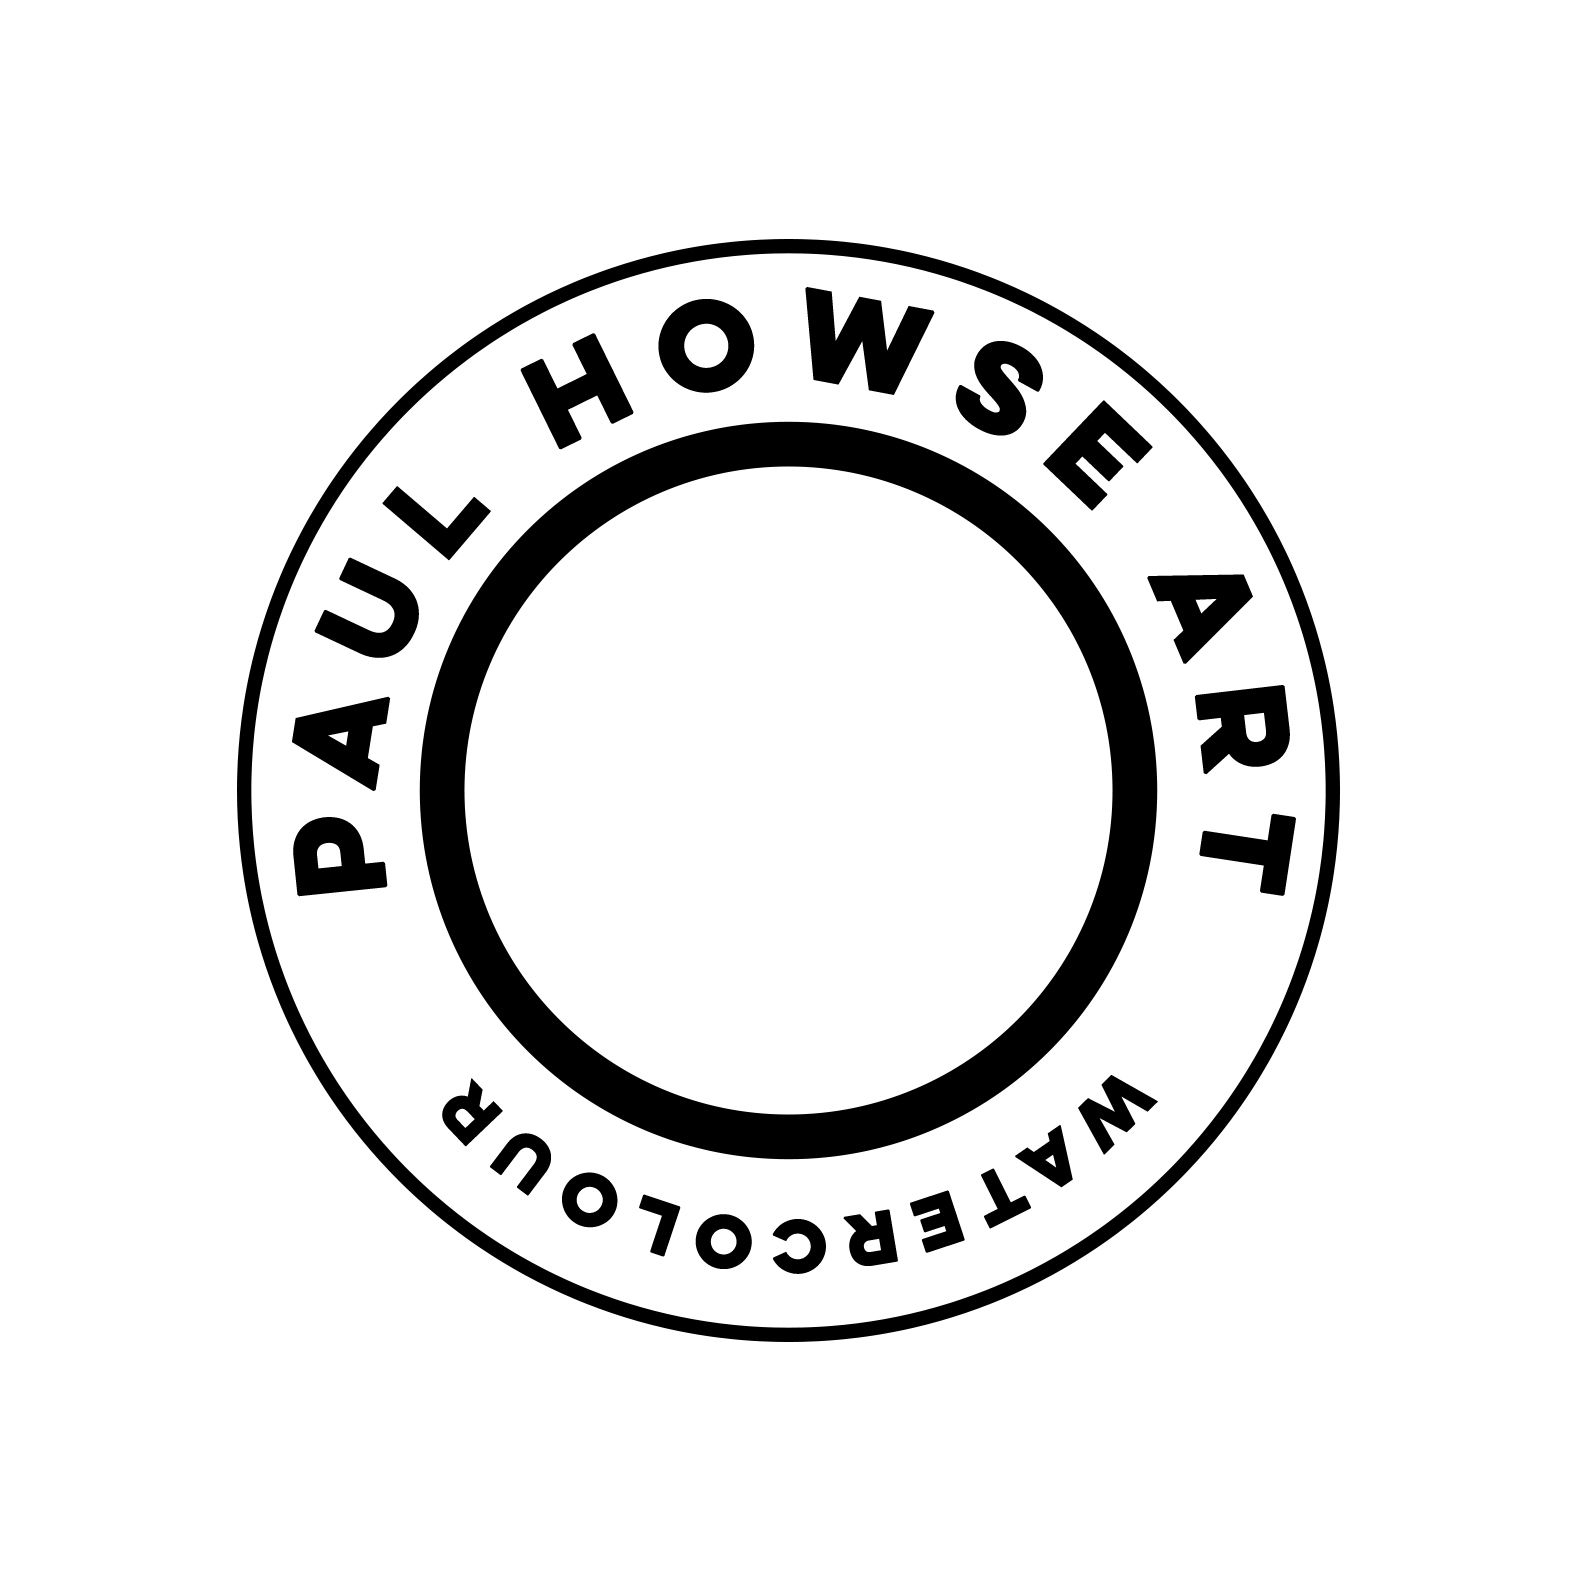 Paul Howse Art